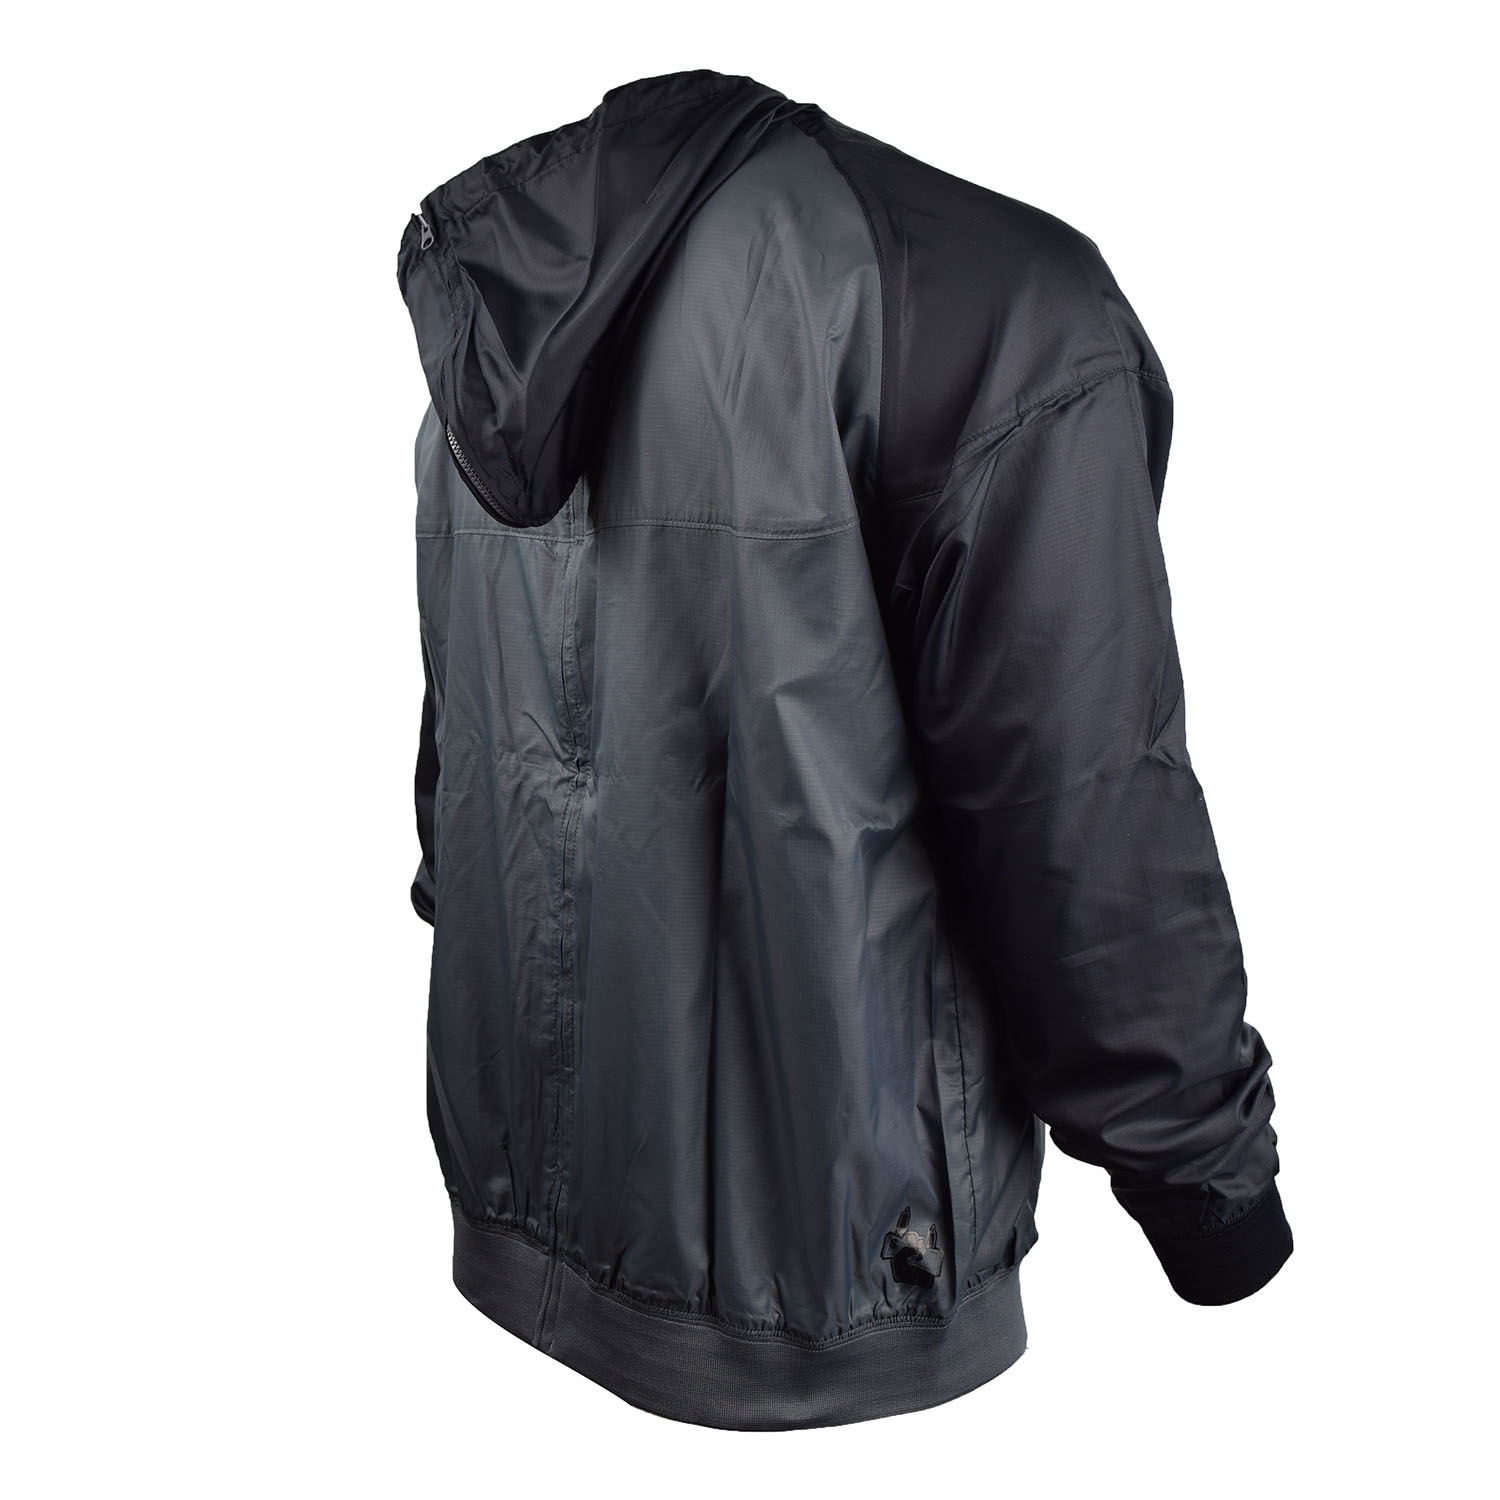 Nike Men's Mascot Split Windrunner Herren Full Zipped Jacket Black-Grey 341447-021 - image 3 of 3